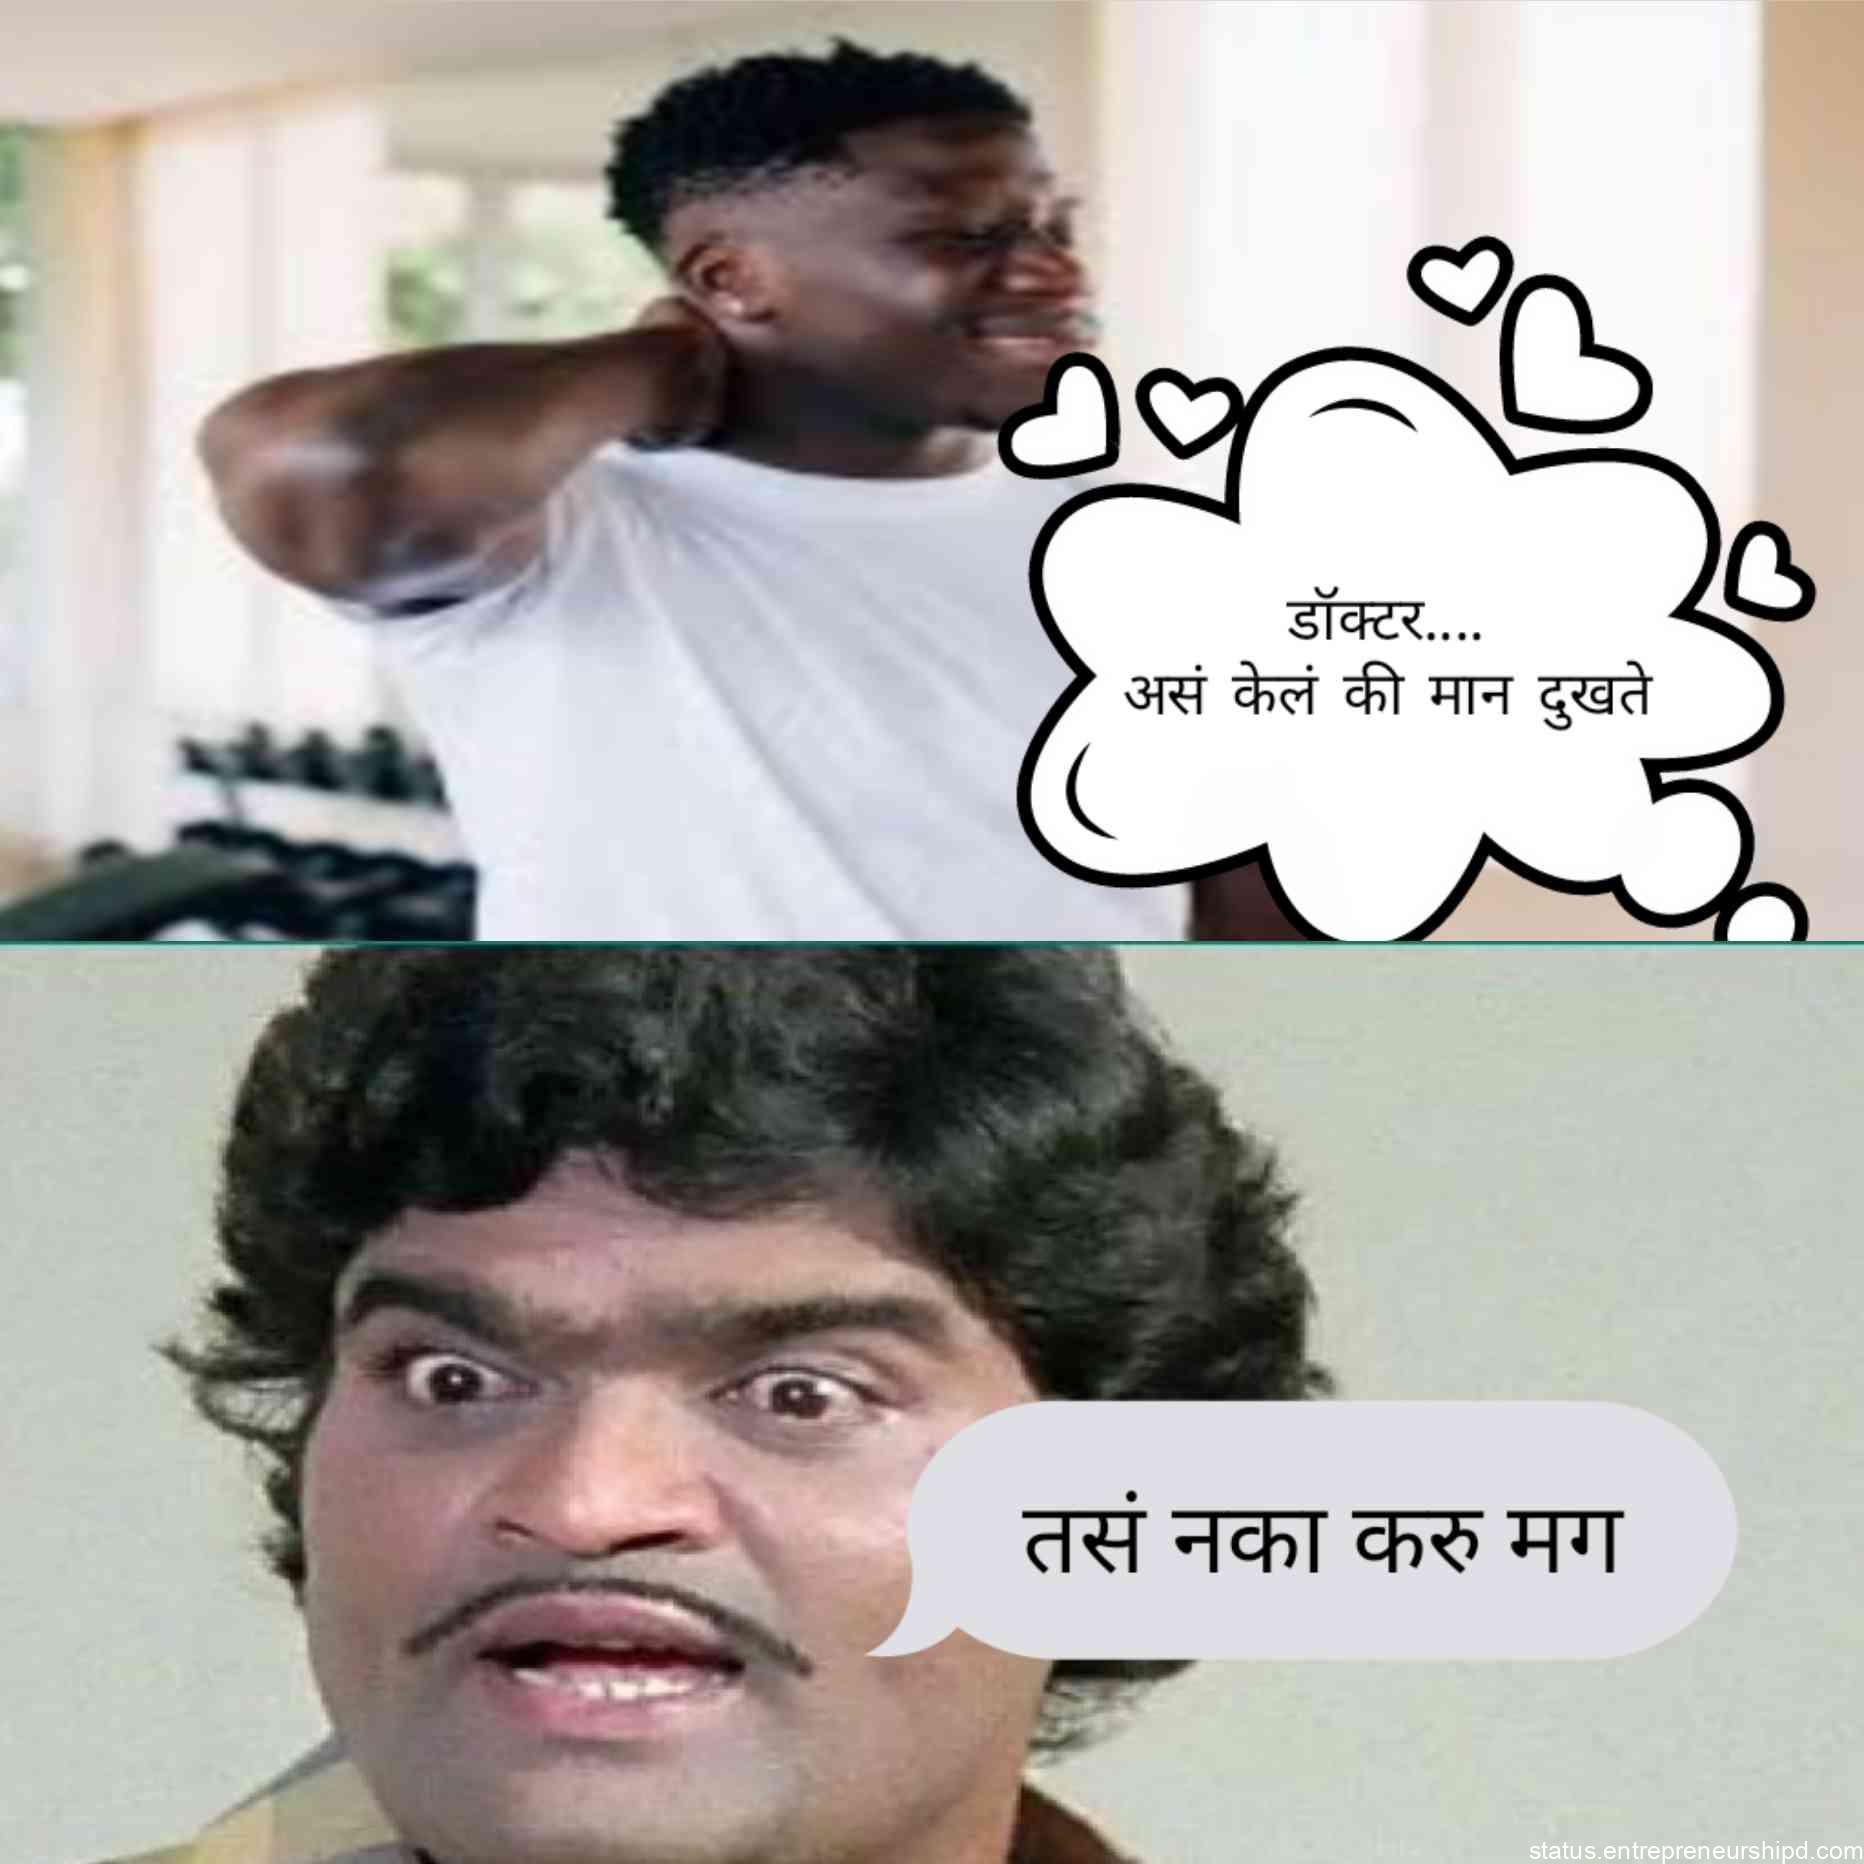 आपण पाहणार आहोत Marathi memes and trolls